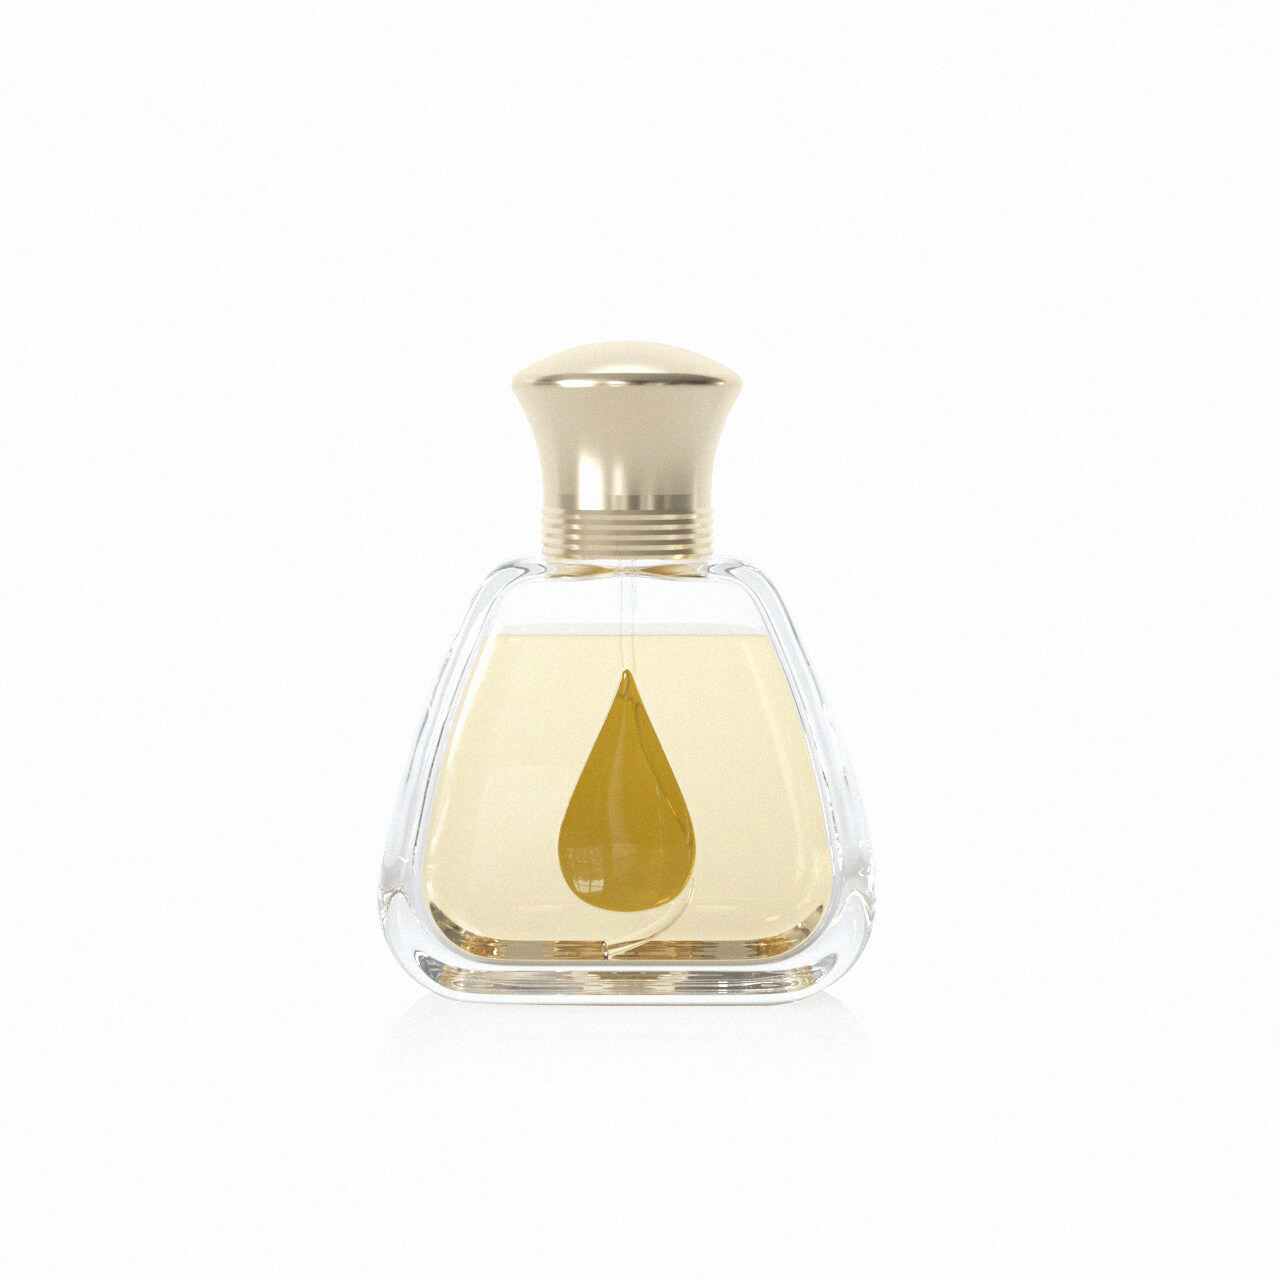 Drop shape perfume bottle (5)